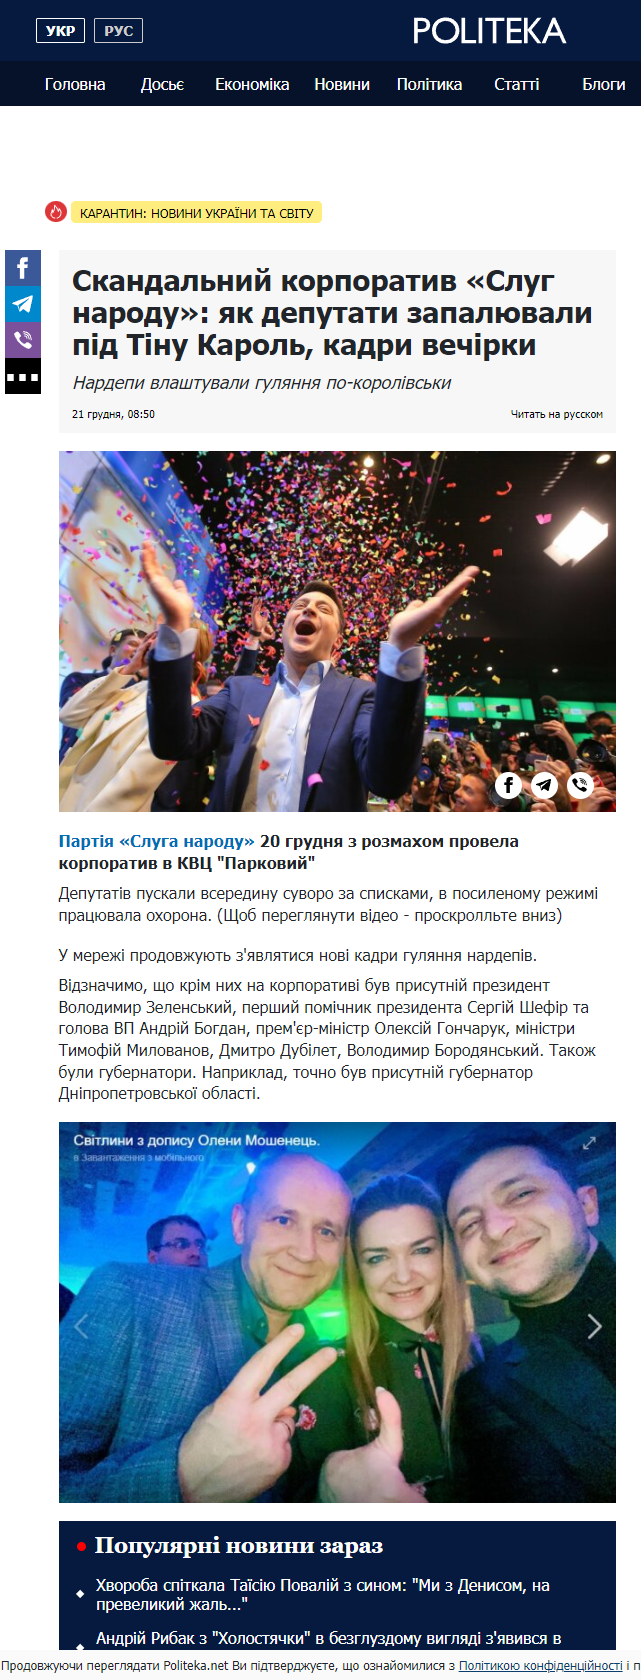 https://apostrophe.ua/ua/news/economy/2021-12-14/krabovyiy-salat-za-1100-griven-slugi-naroda-sobralis-s-shikom-otmetit-novyiy-god-video/252905